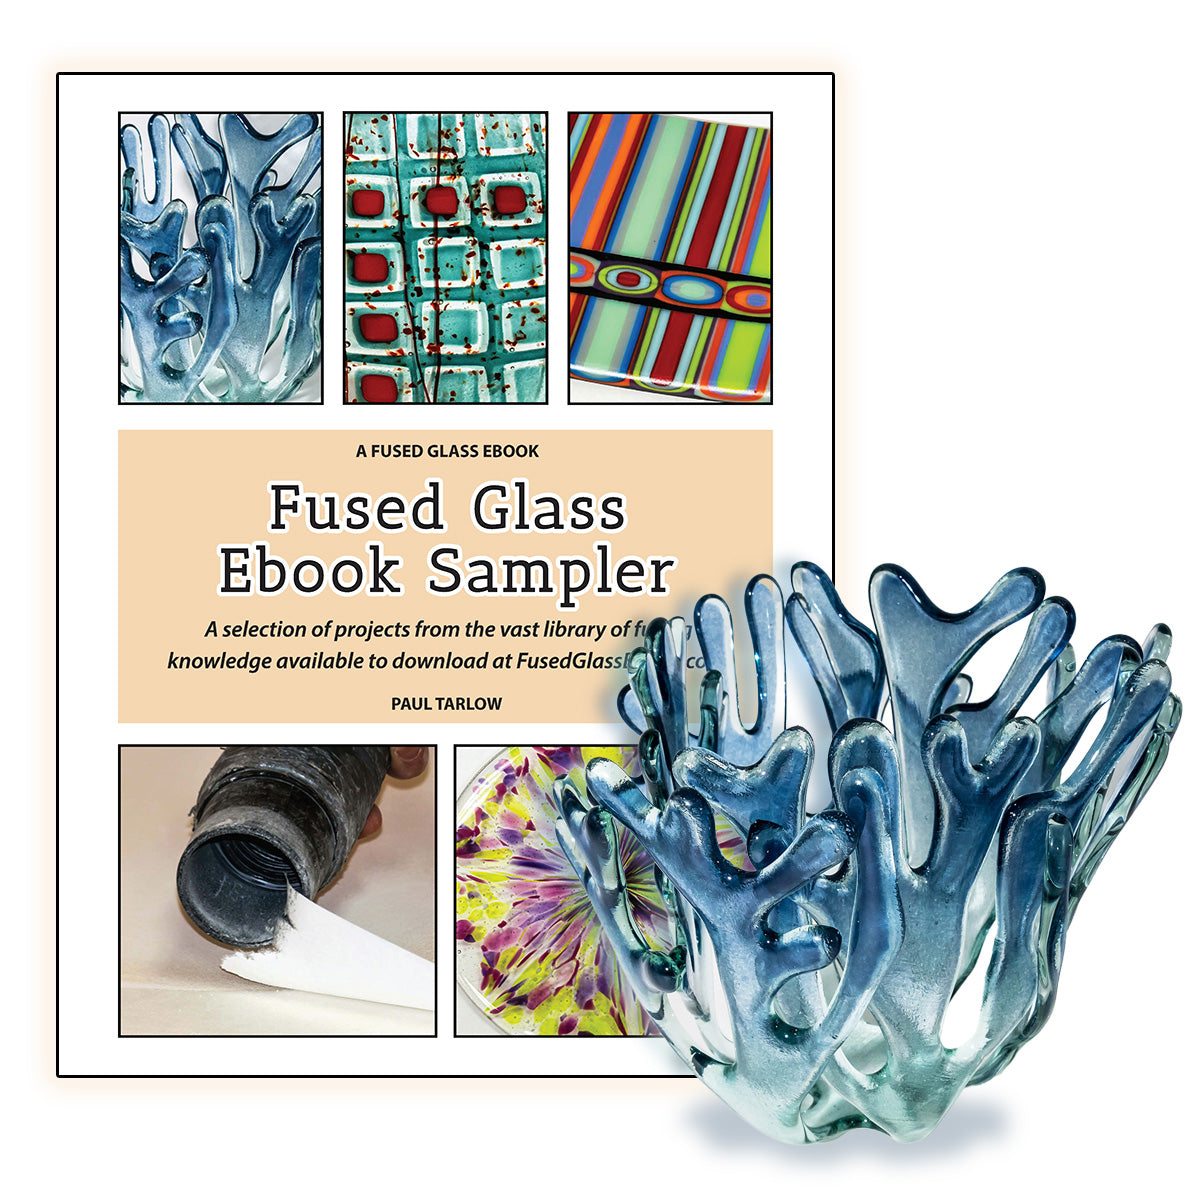 Fused Glass eBook Sampler